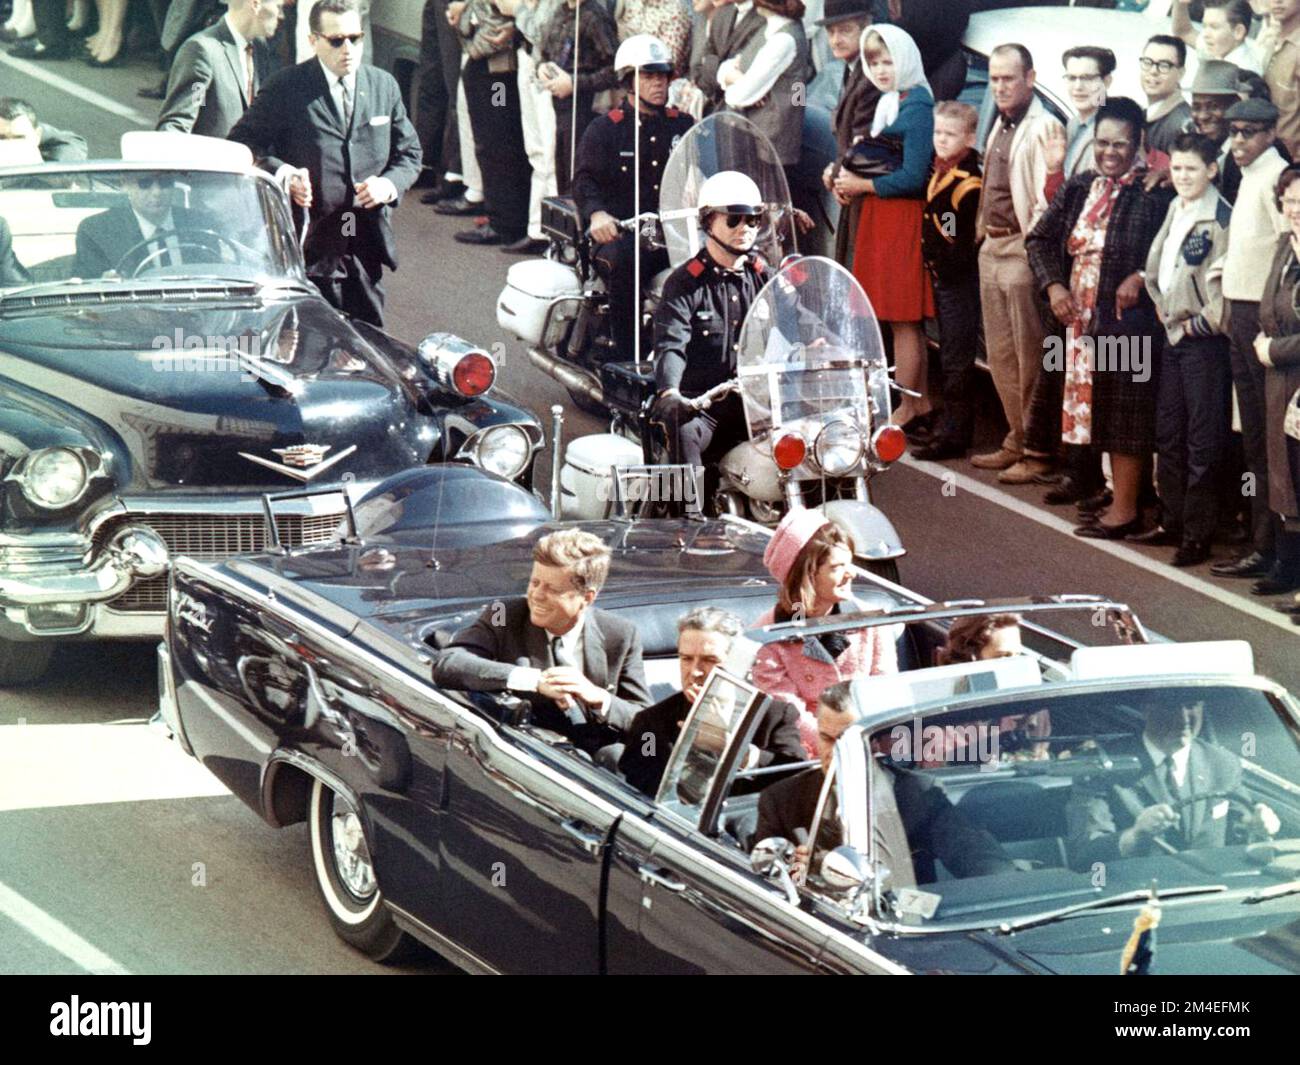 Bild von Präsident Kennedy in der Limousine in Dallas, Texas, an der Main Street, Minuten vor dem Attentat. In der Präsidentenlimousine befinden sich Jackie Kennedy, Texas Governor John Connally, und seine Frau Nellie. Stockfoto